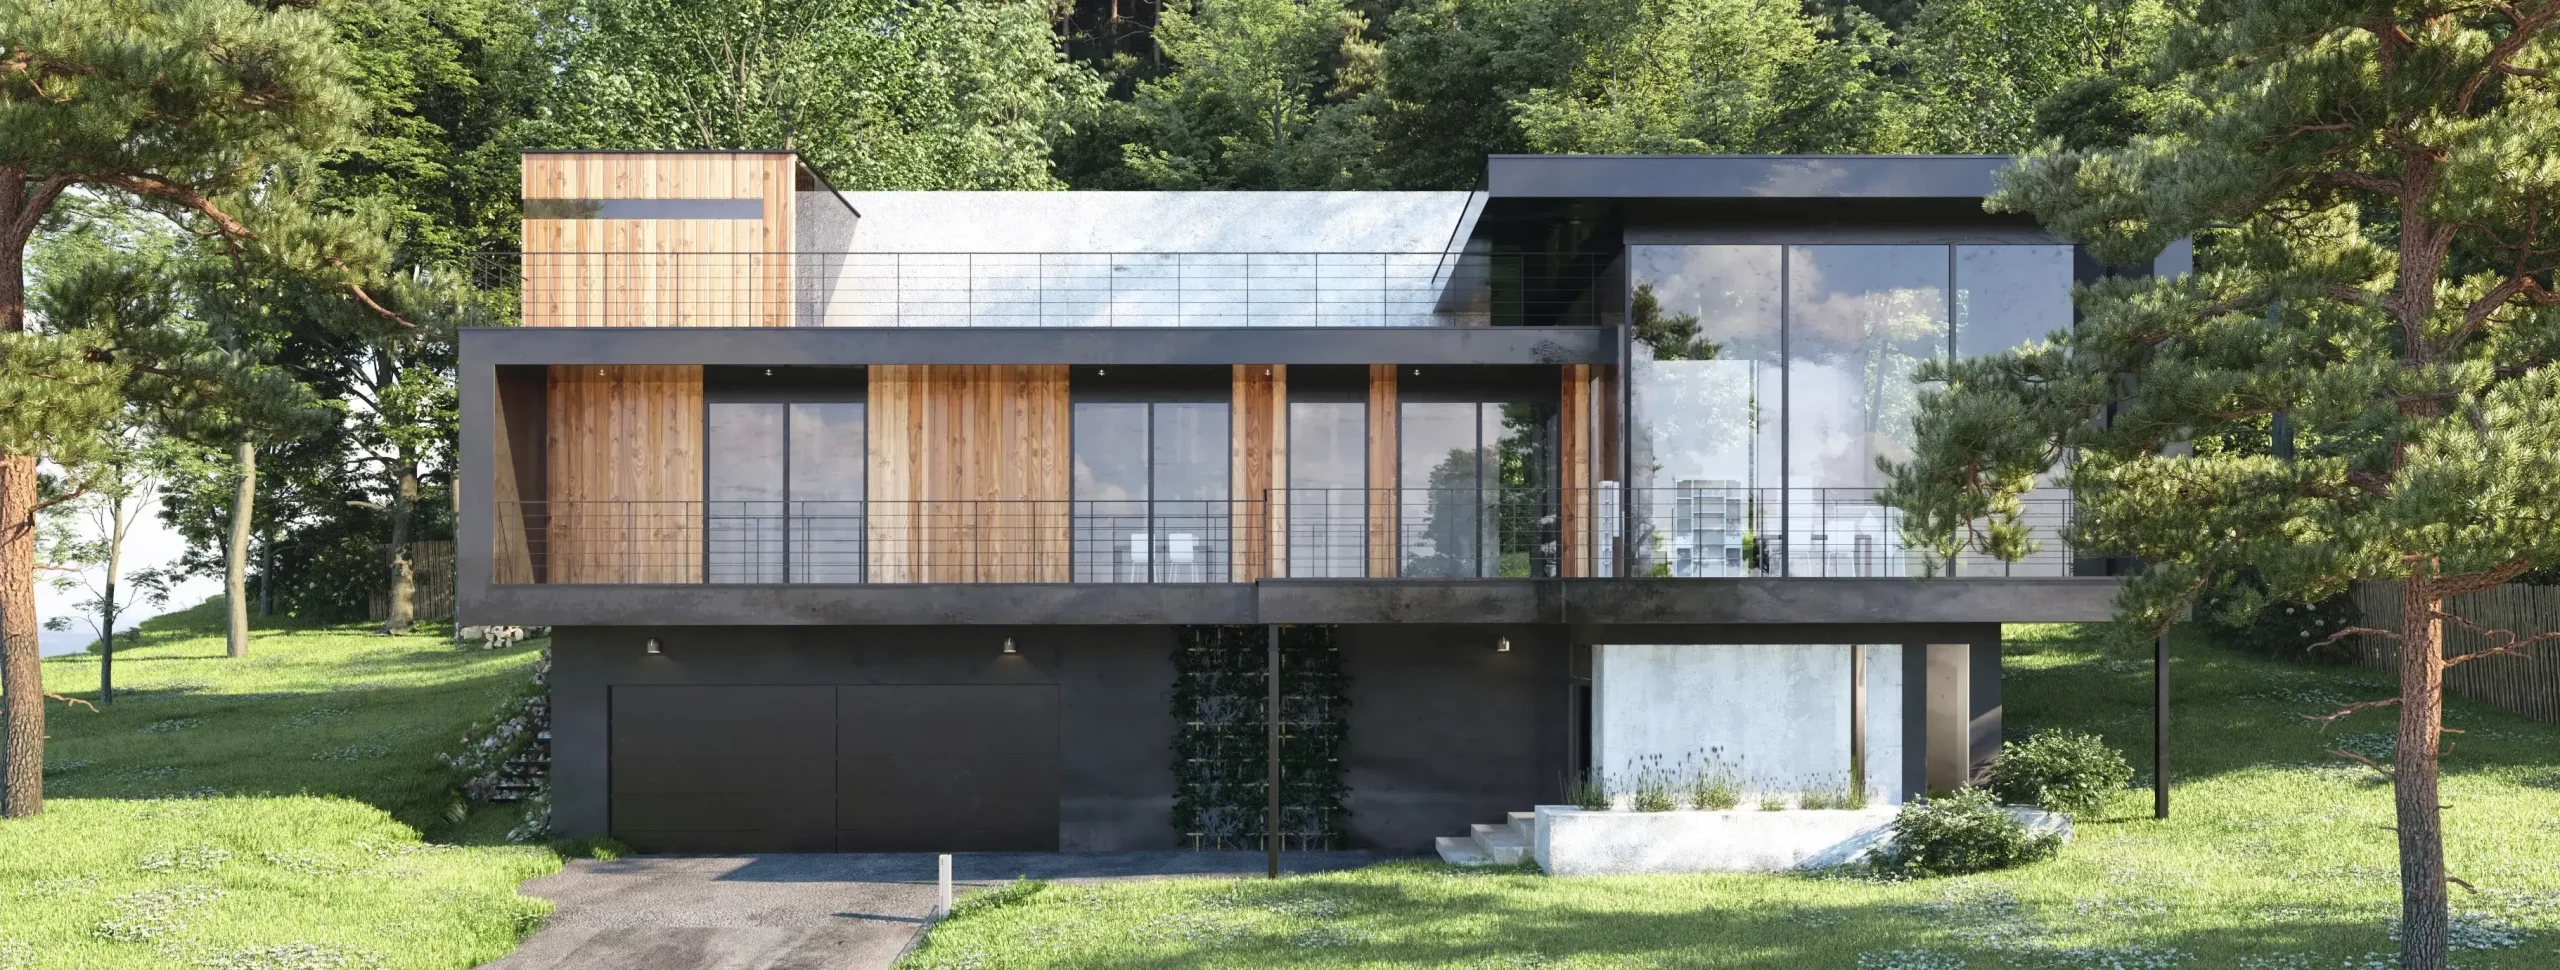 maison passive écologique maison bois bioclimatique